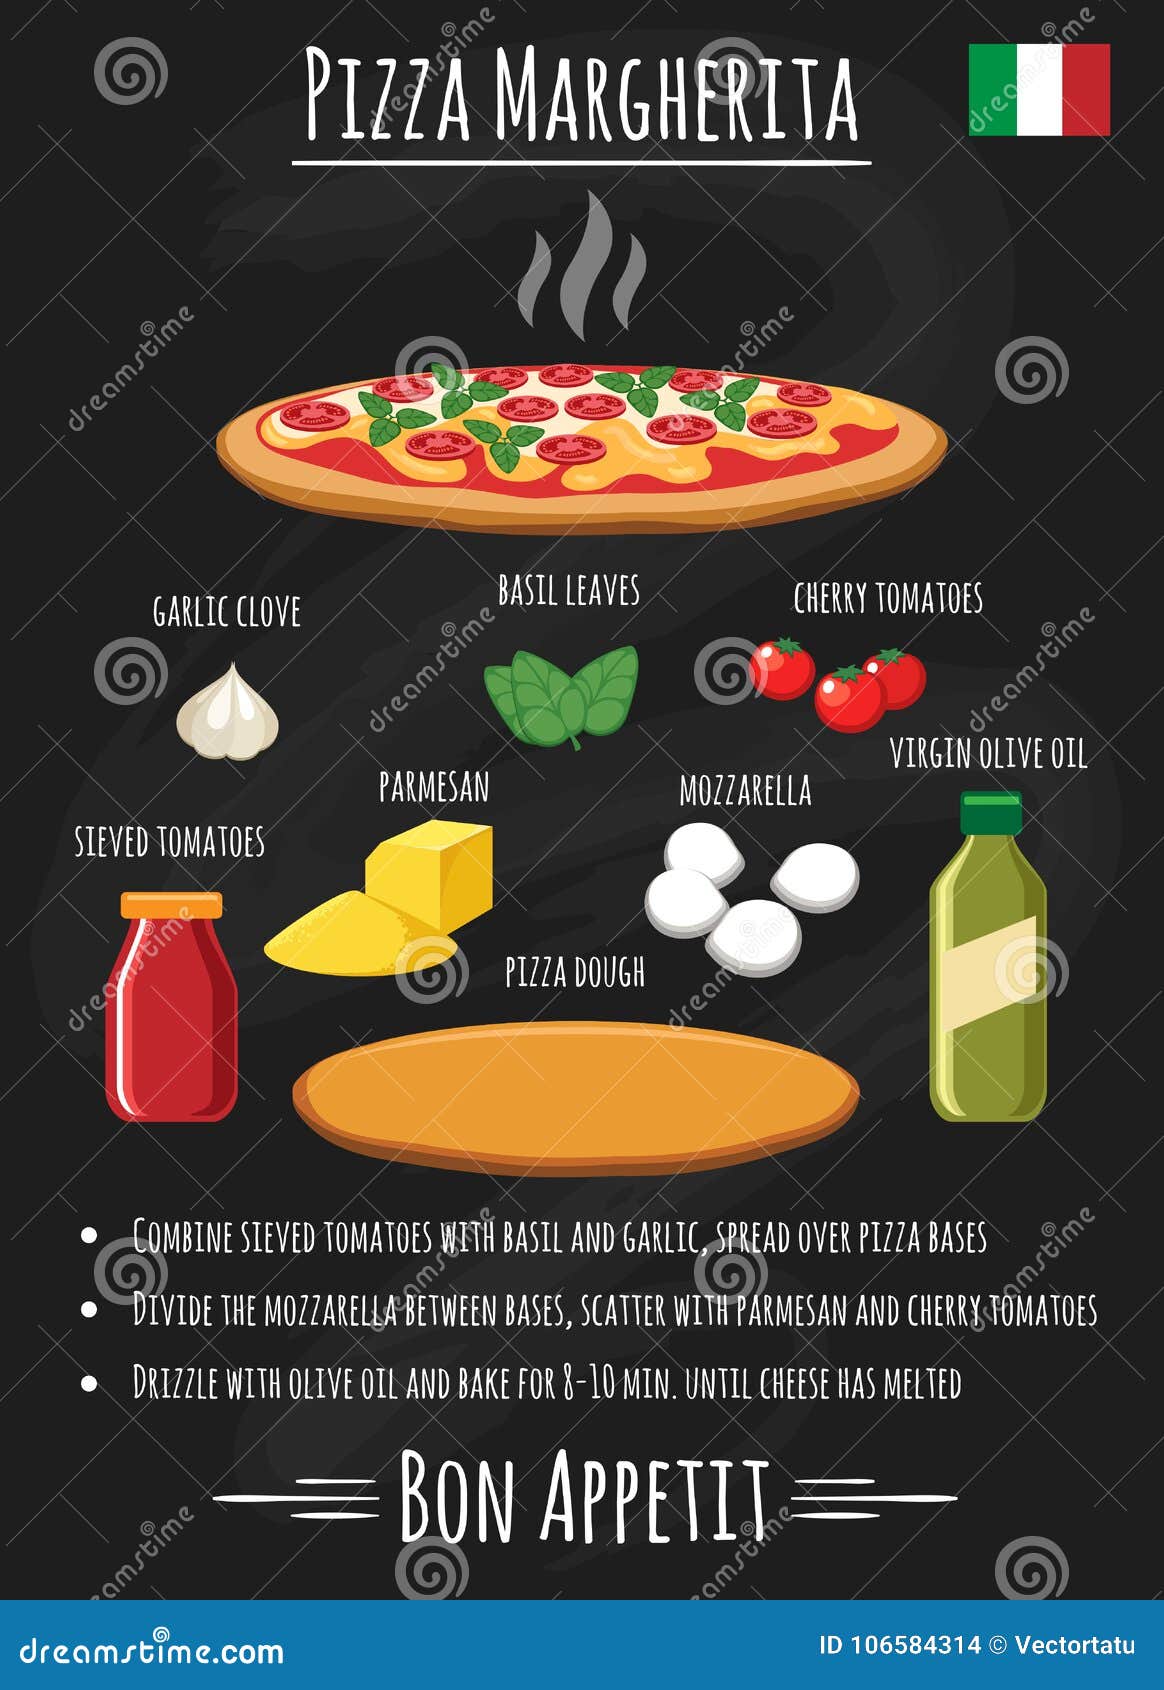 Рецепт пиццы на английском языке с переводом